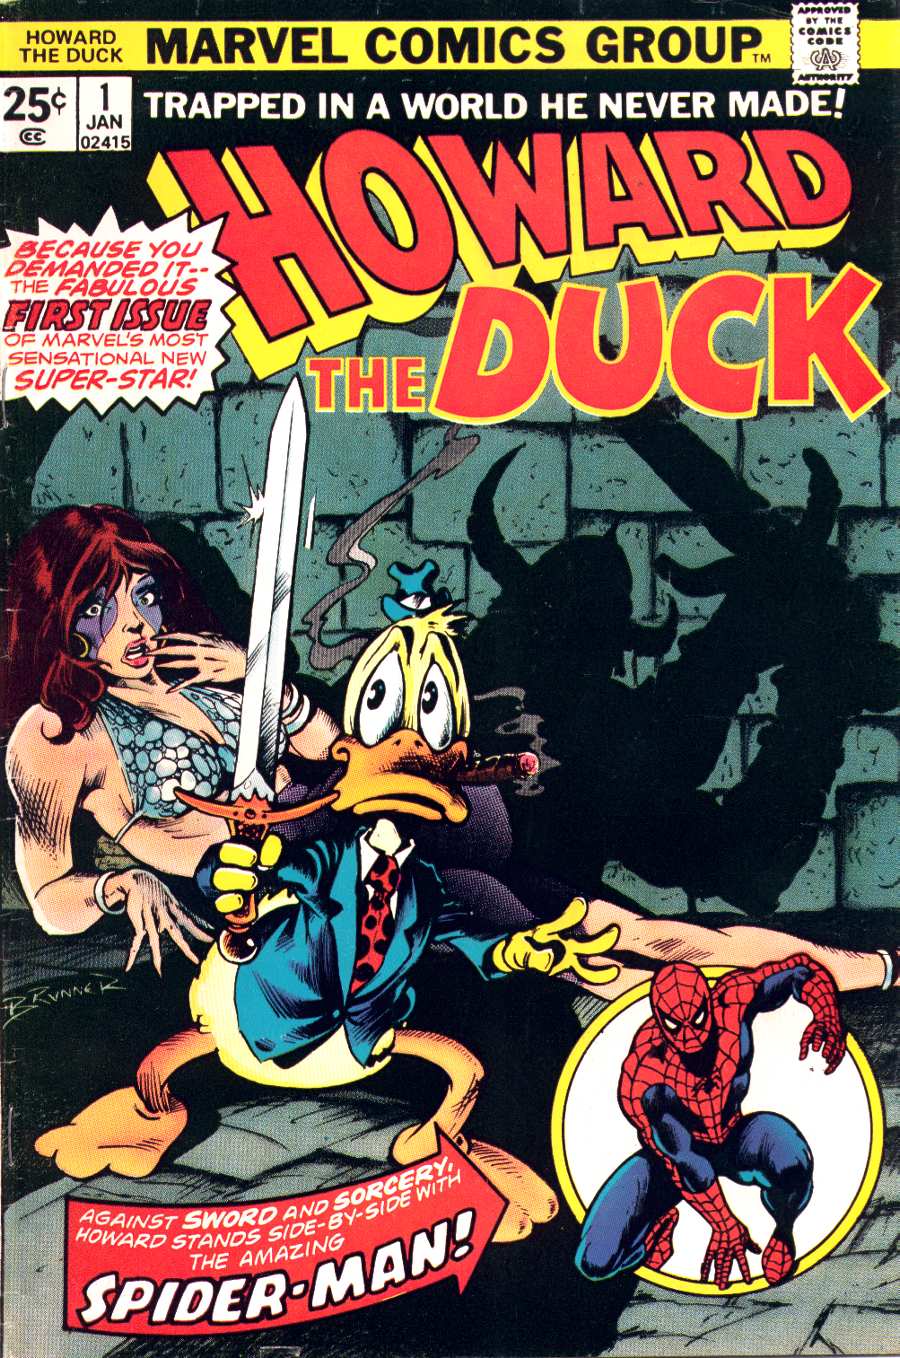 Howard the Duck 1986 - IMDb